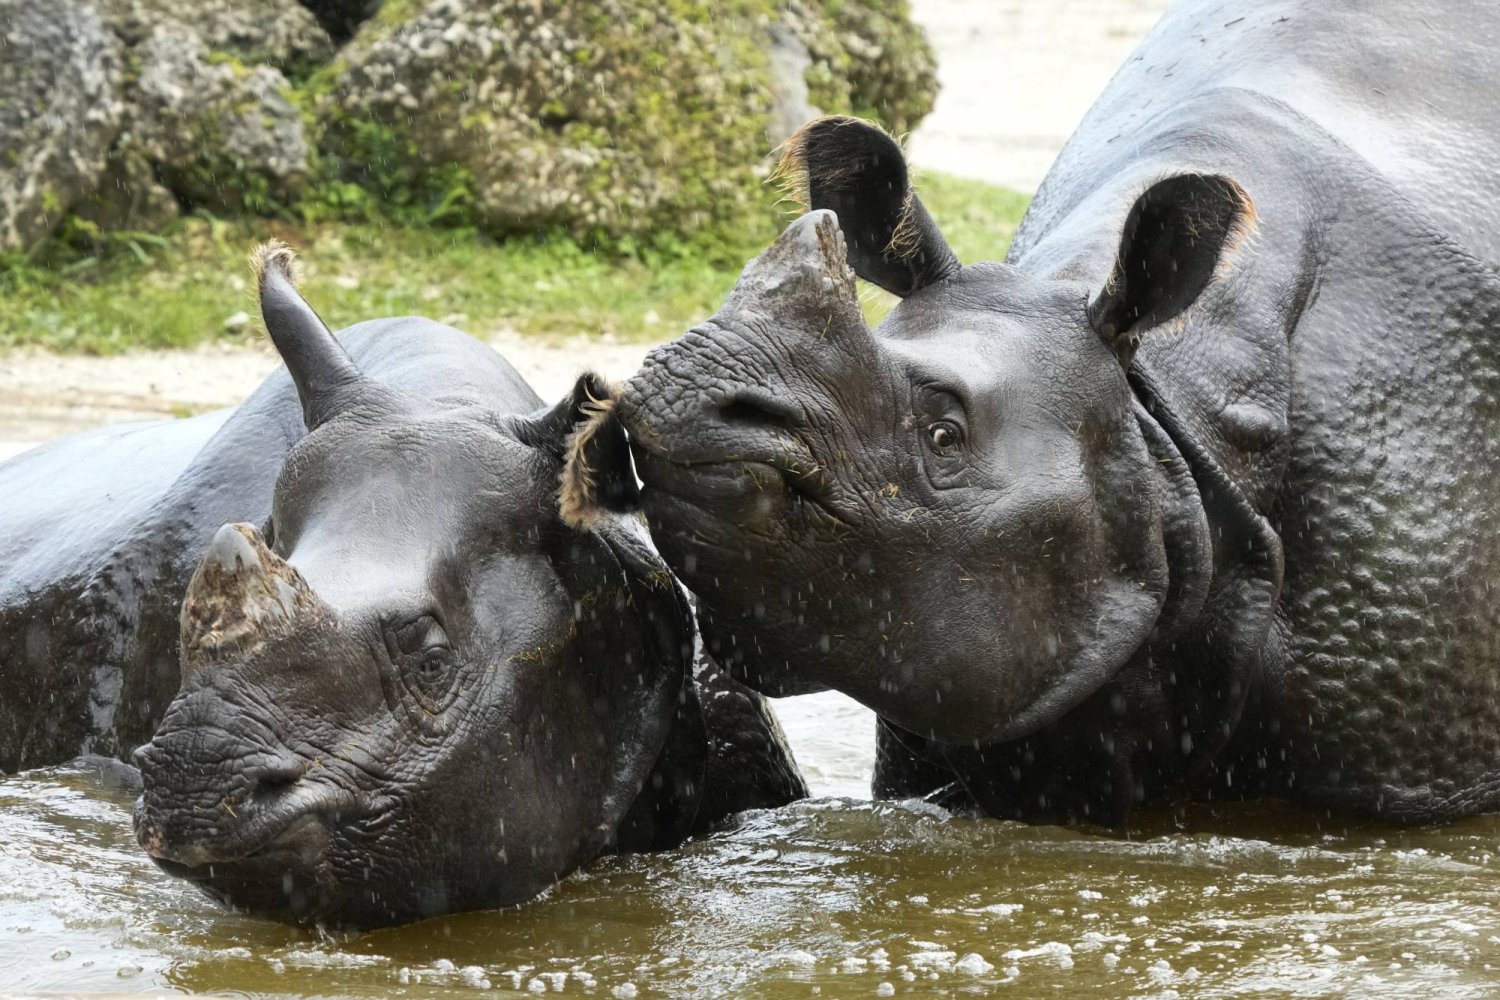 حقن قرون حيوانات وحيد القرن بمواد مشعّة للحدّ من صيدها في جنوب أفريقيا